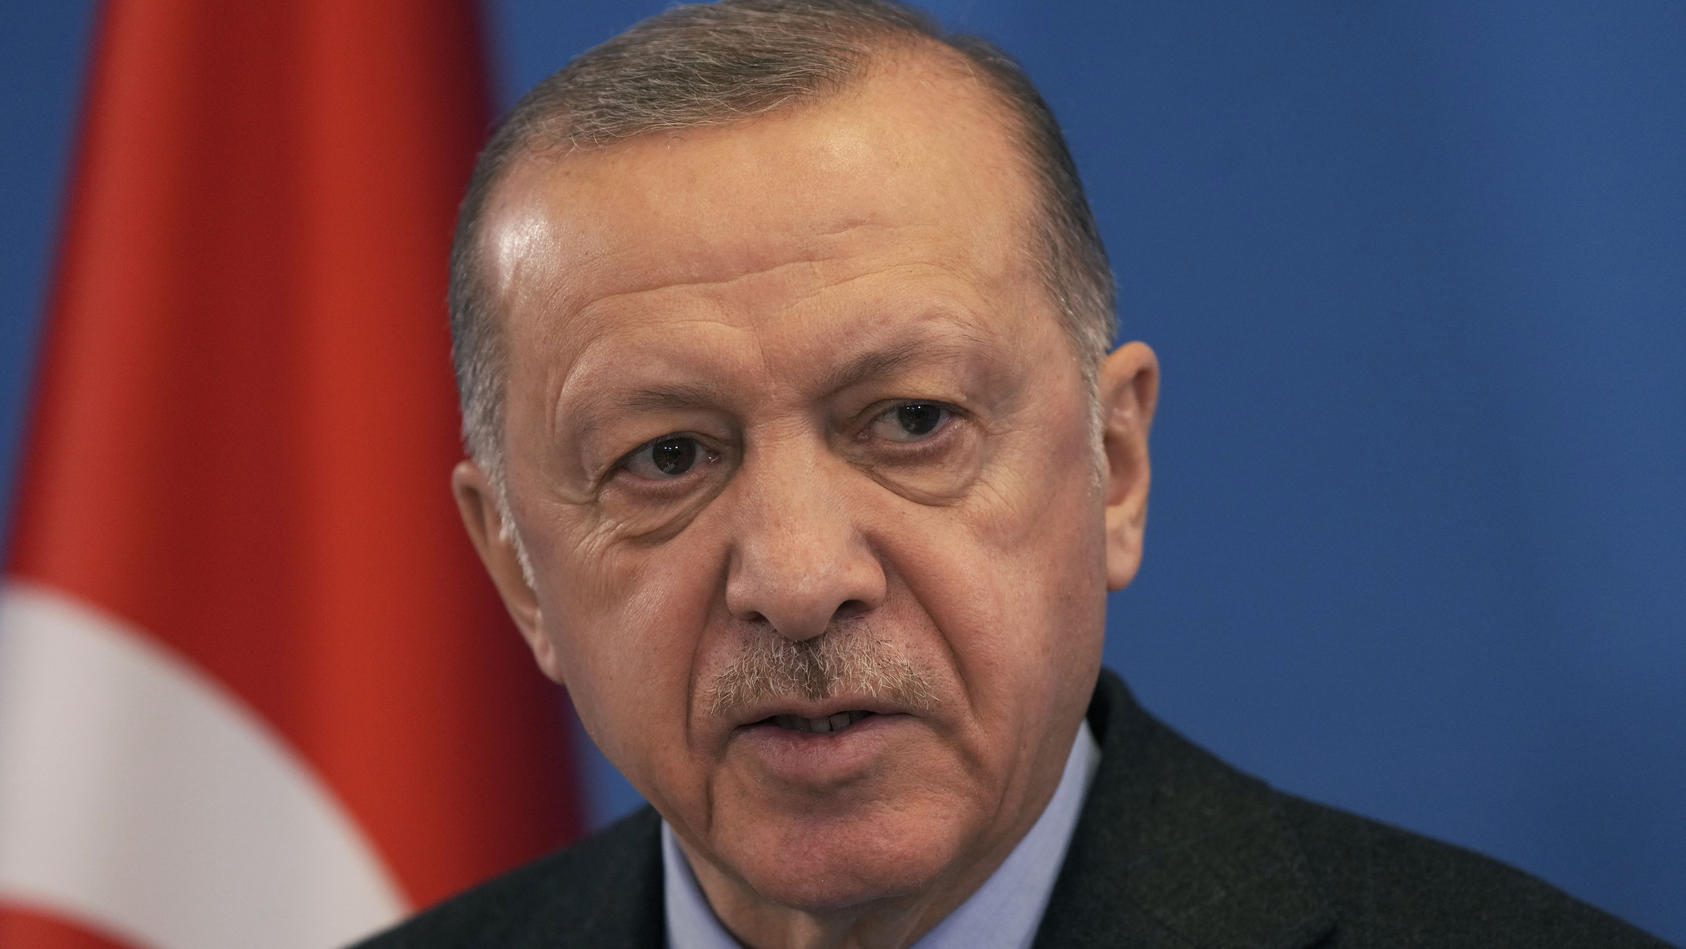 ARCHIV - 24.03.2022, Belgien, Brüssel: Recep Tayyip Erdogan, Präsident der Türkei, nimmt an einer Pressekonferenz nach dem Nato Sondergipfel im Nato Hauptquartier teil. (zu dpa "Erdogan wütet gegen Schweden - auch mit Blick auf Wiederwahl") Foto: Mar